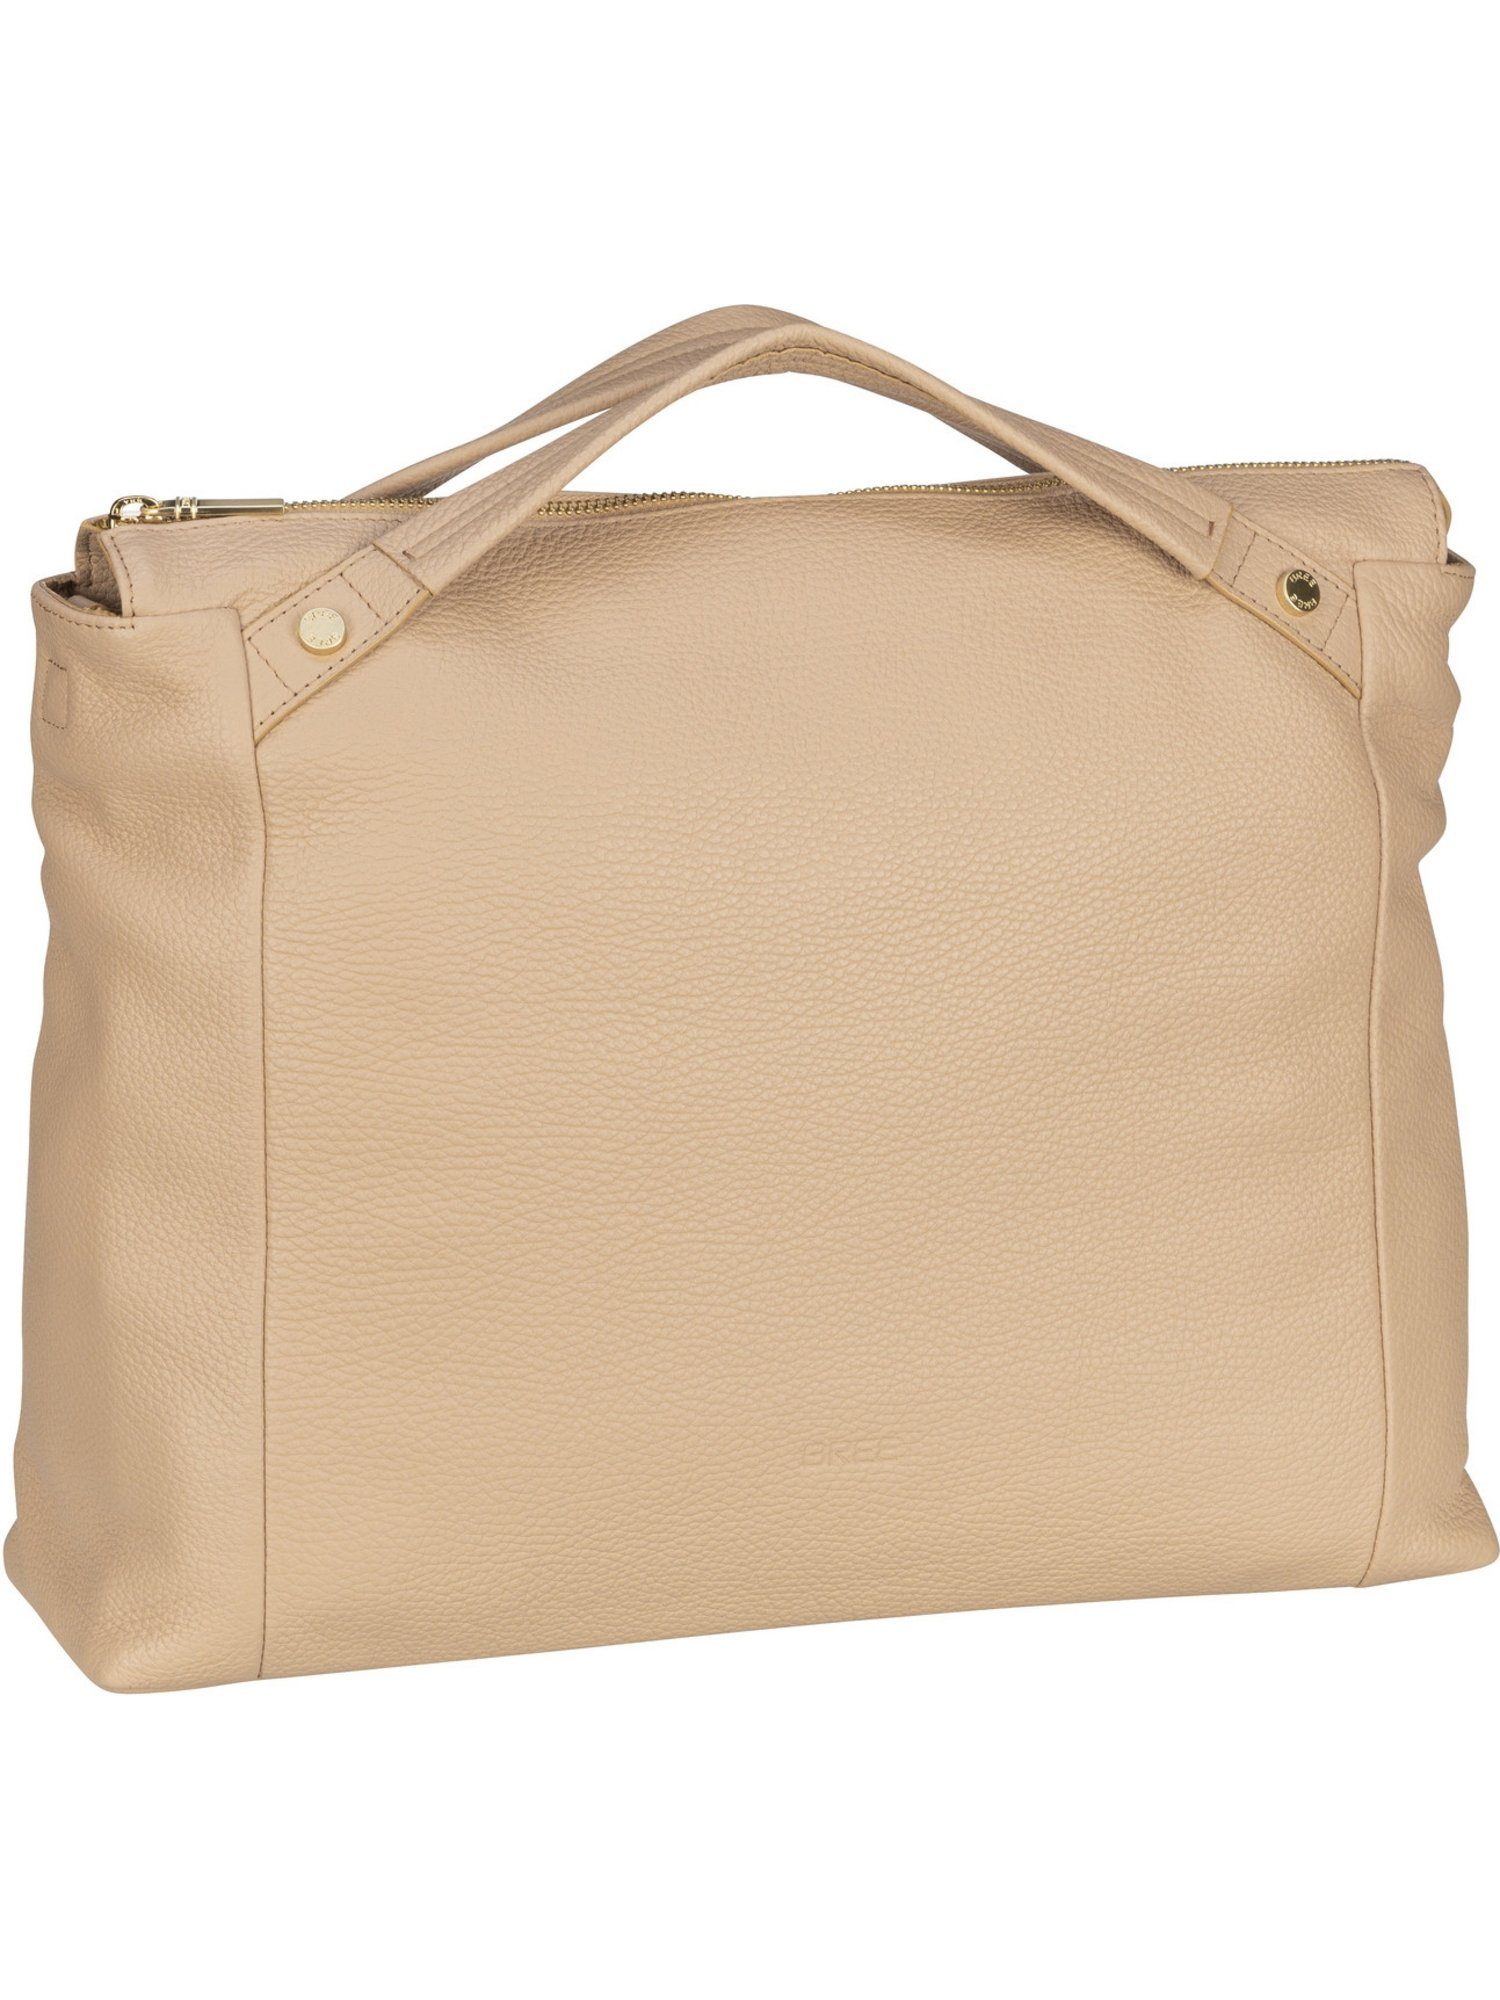 BREE Handtasche Tana 5, Aktentasche, überzeugt durch zeitlose Eleganz